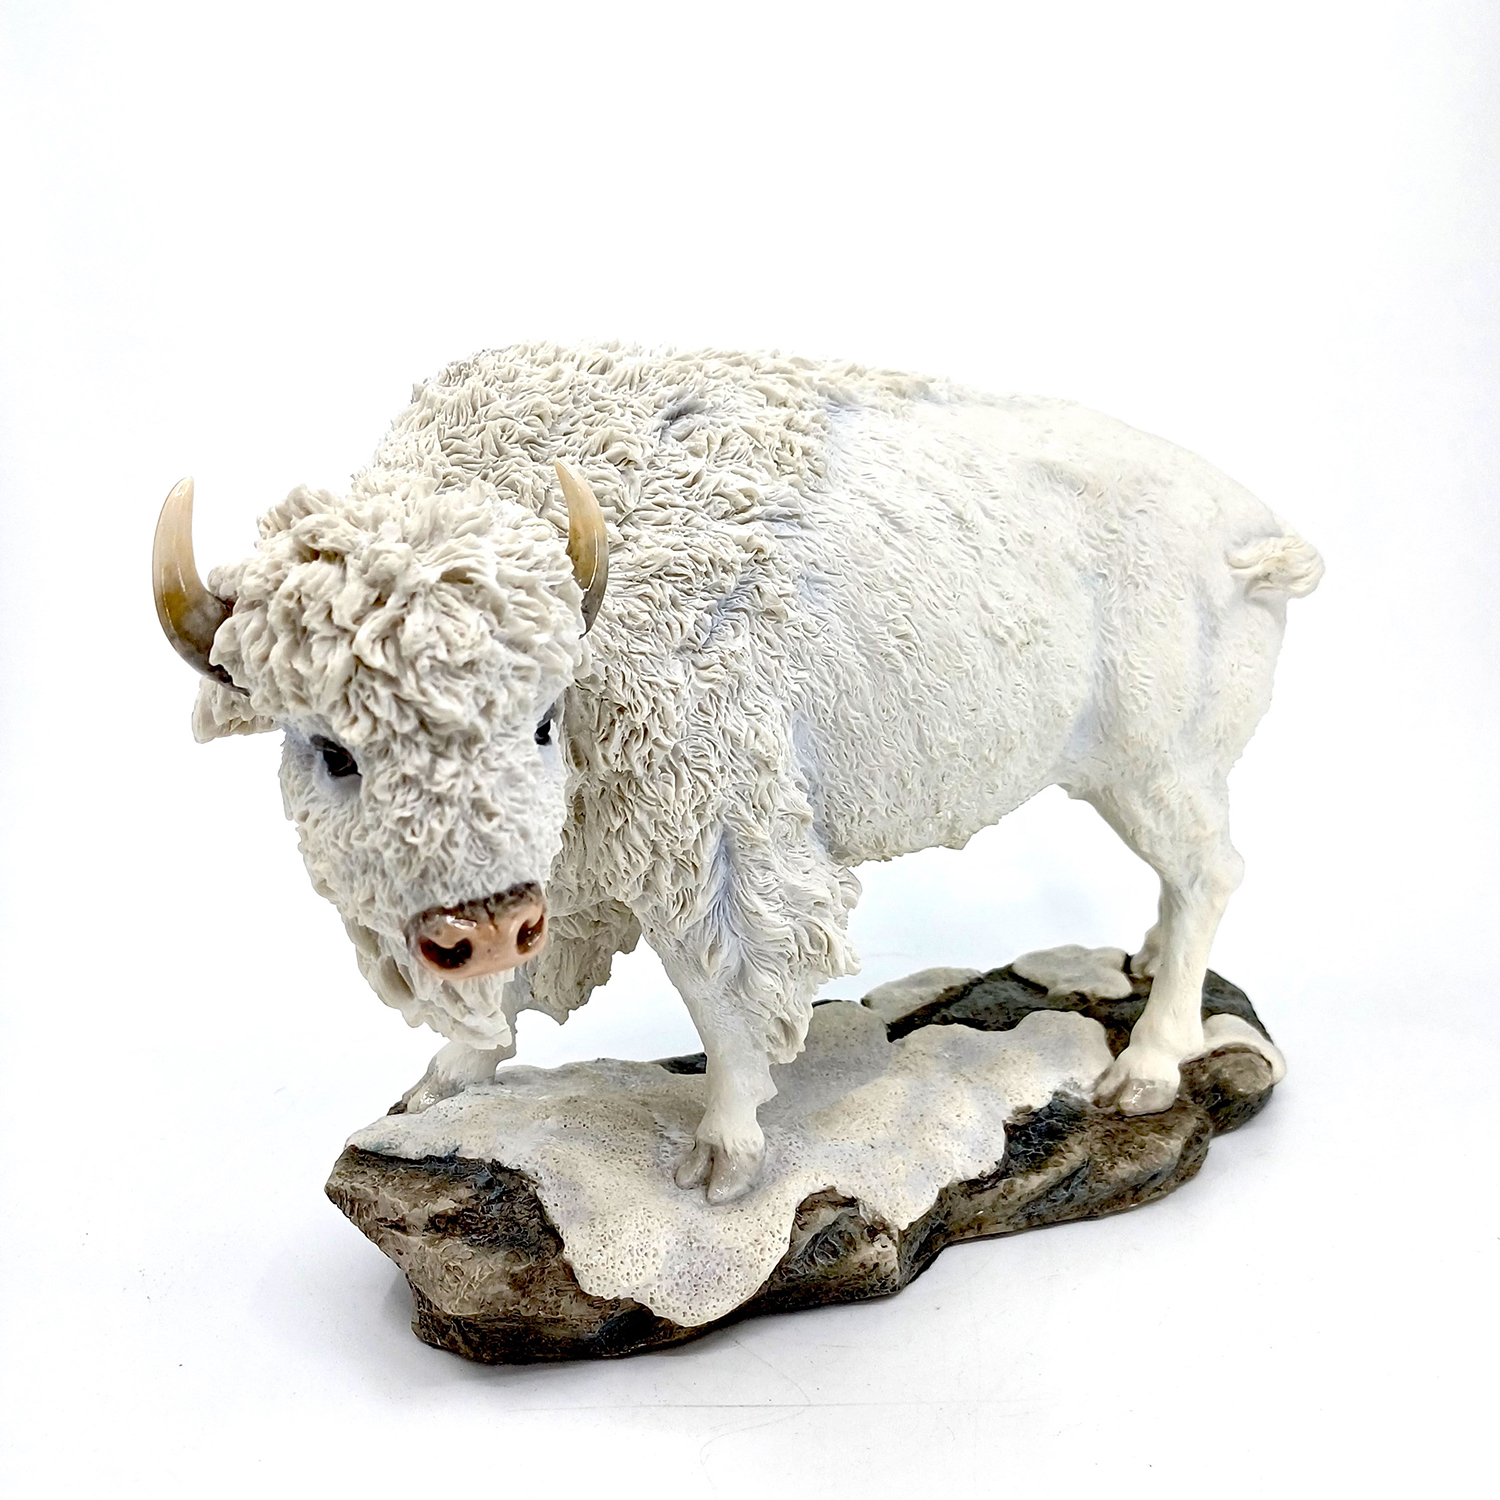 Bison Sculptures for Sale